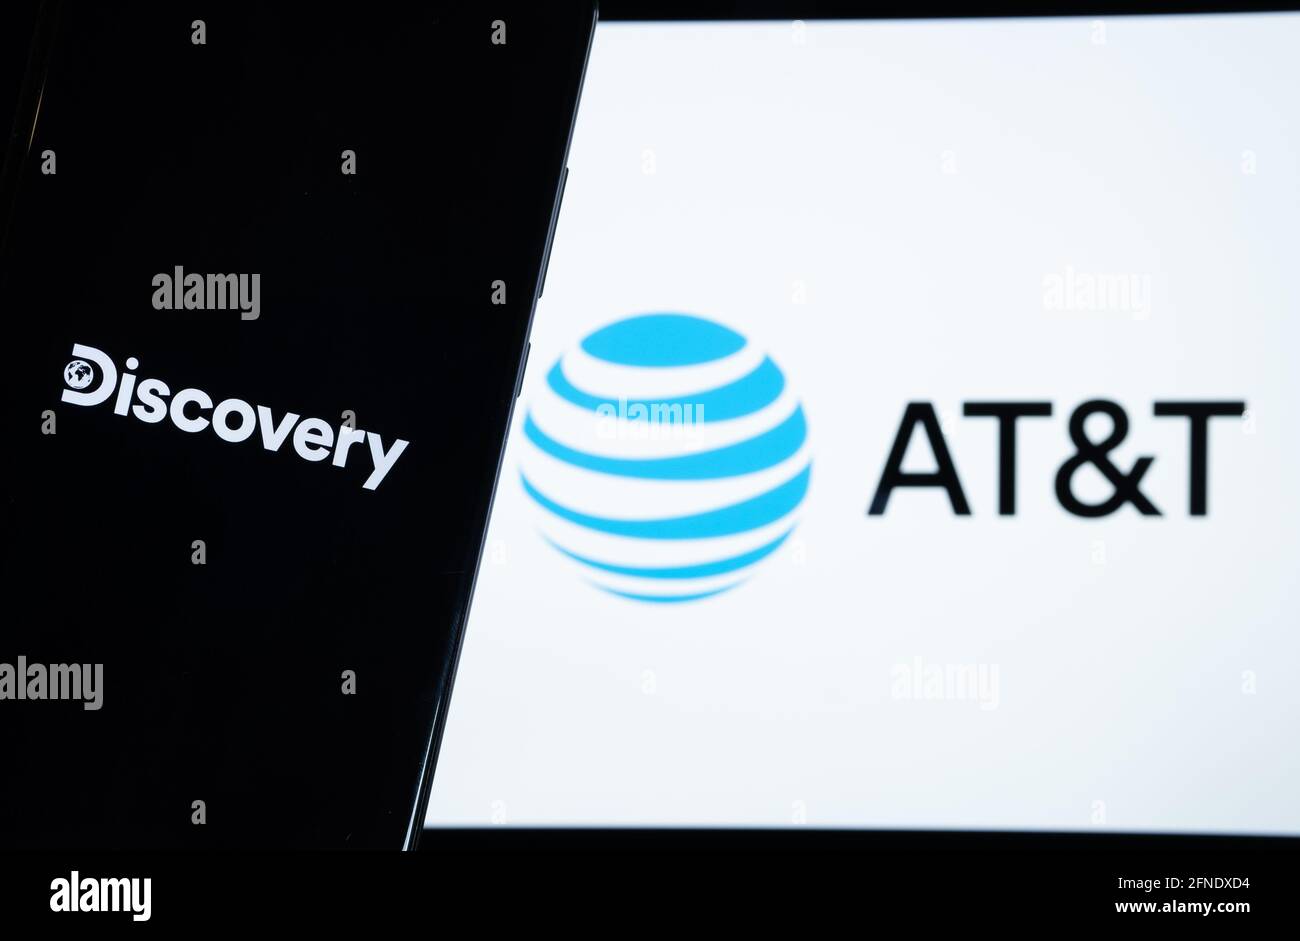 Concetto di fusione di Discovery e AT&T. Logo Discovery visualizzato sullo smartphone scuro e LOGO AT&T sullo schermo del notebook sfocato sul retro. Staffor, Re Unito Foto Stock